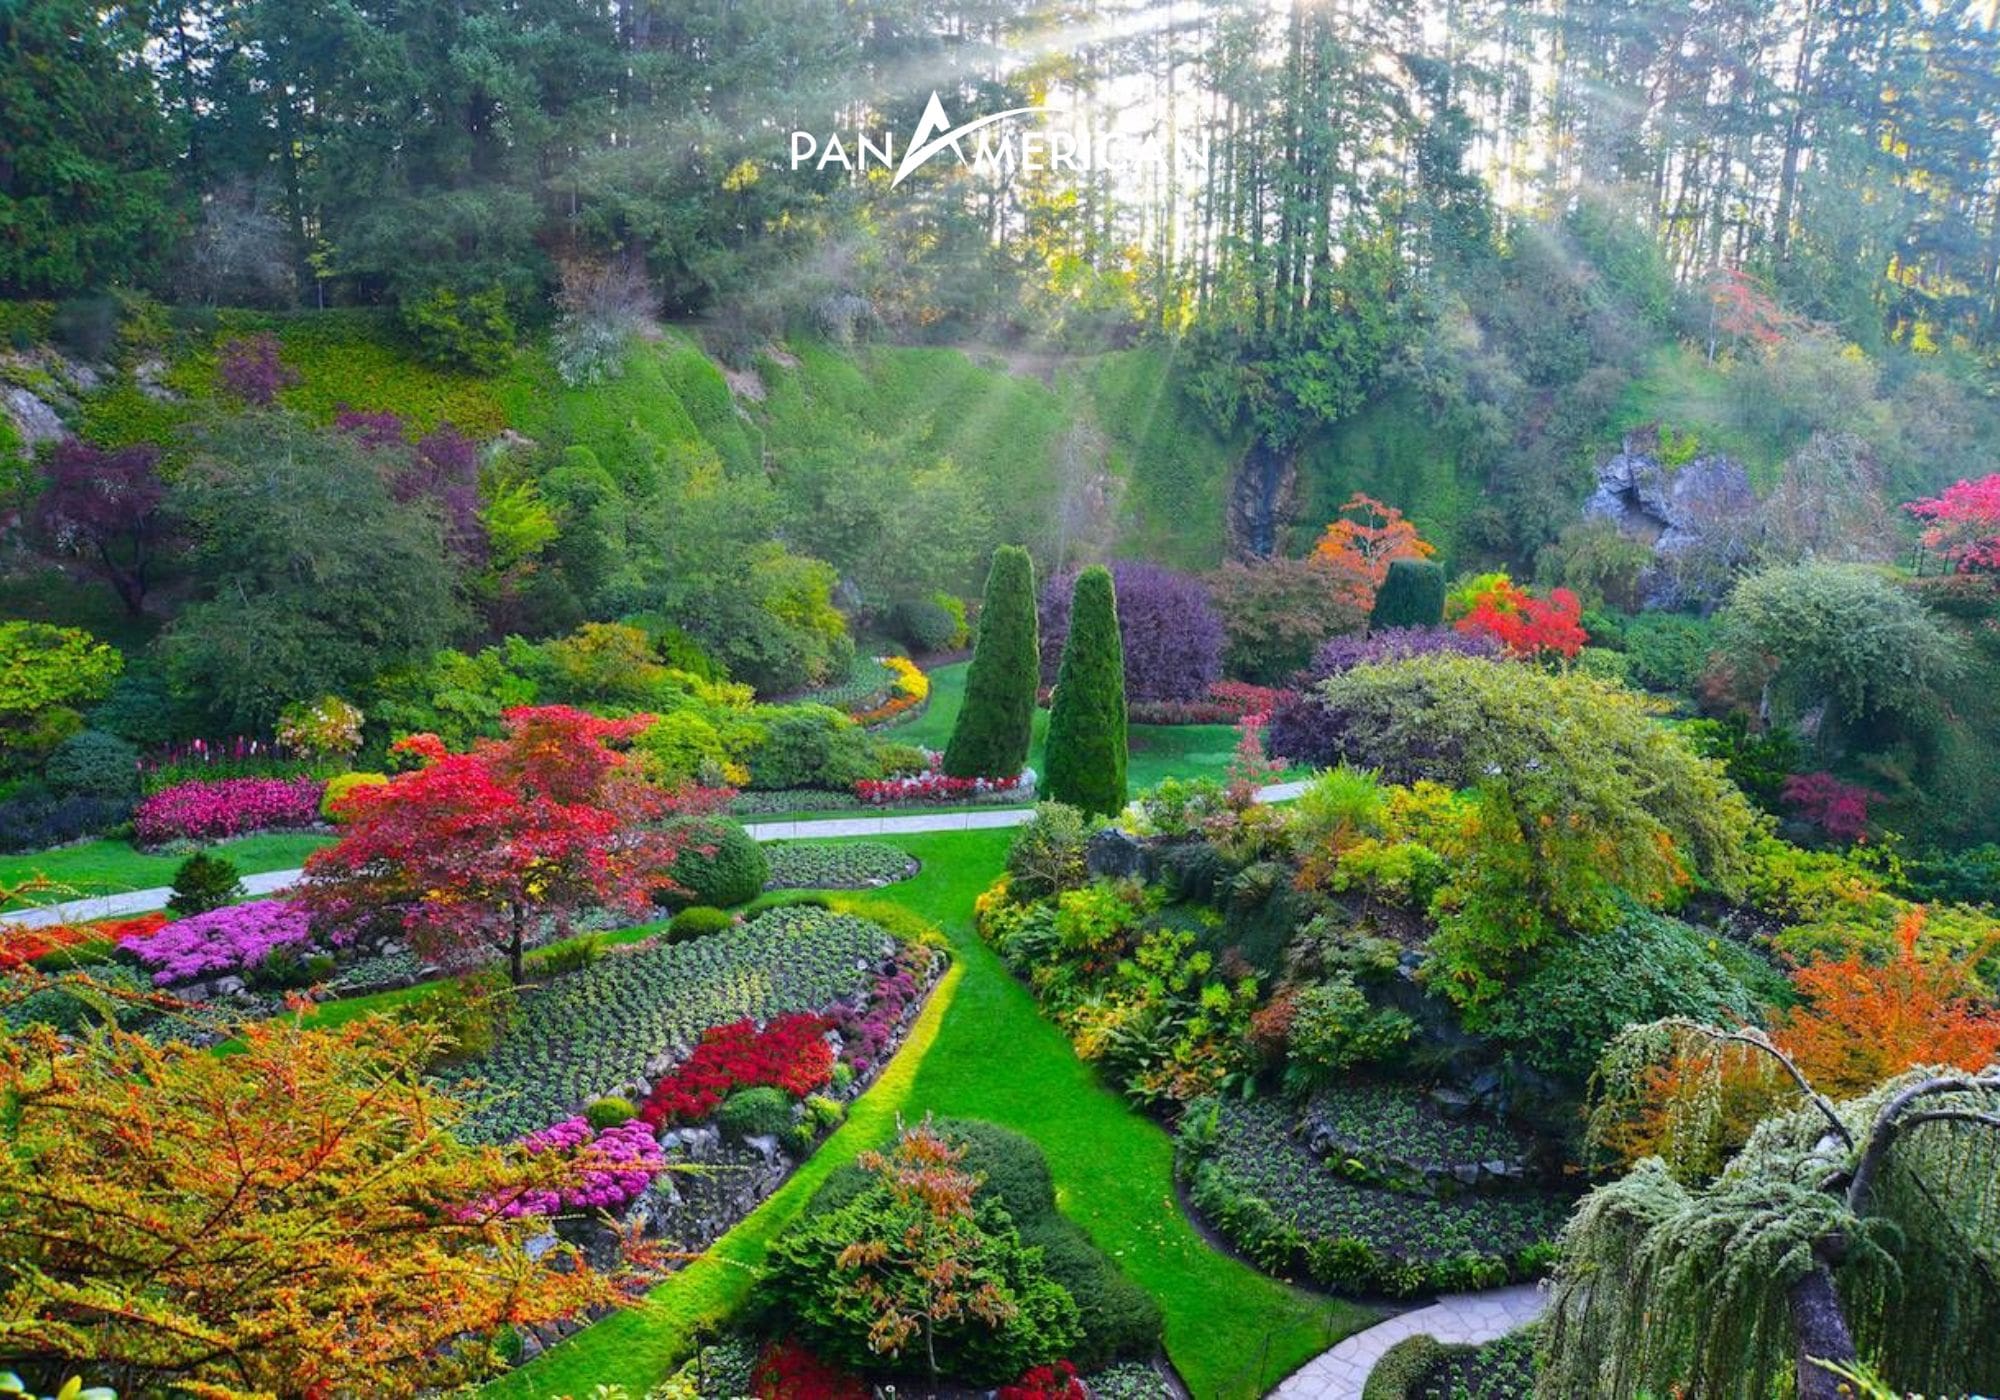 Khiến cho mọi du khách phải si mê từ cái nhìn đầu tiên bởi vẻ đẹp của khu vườn